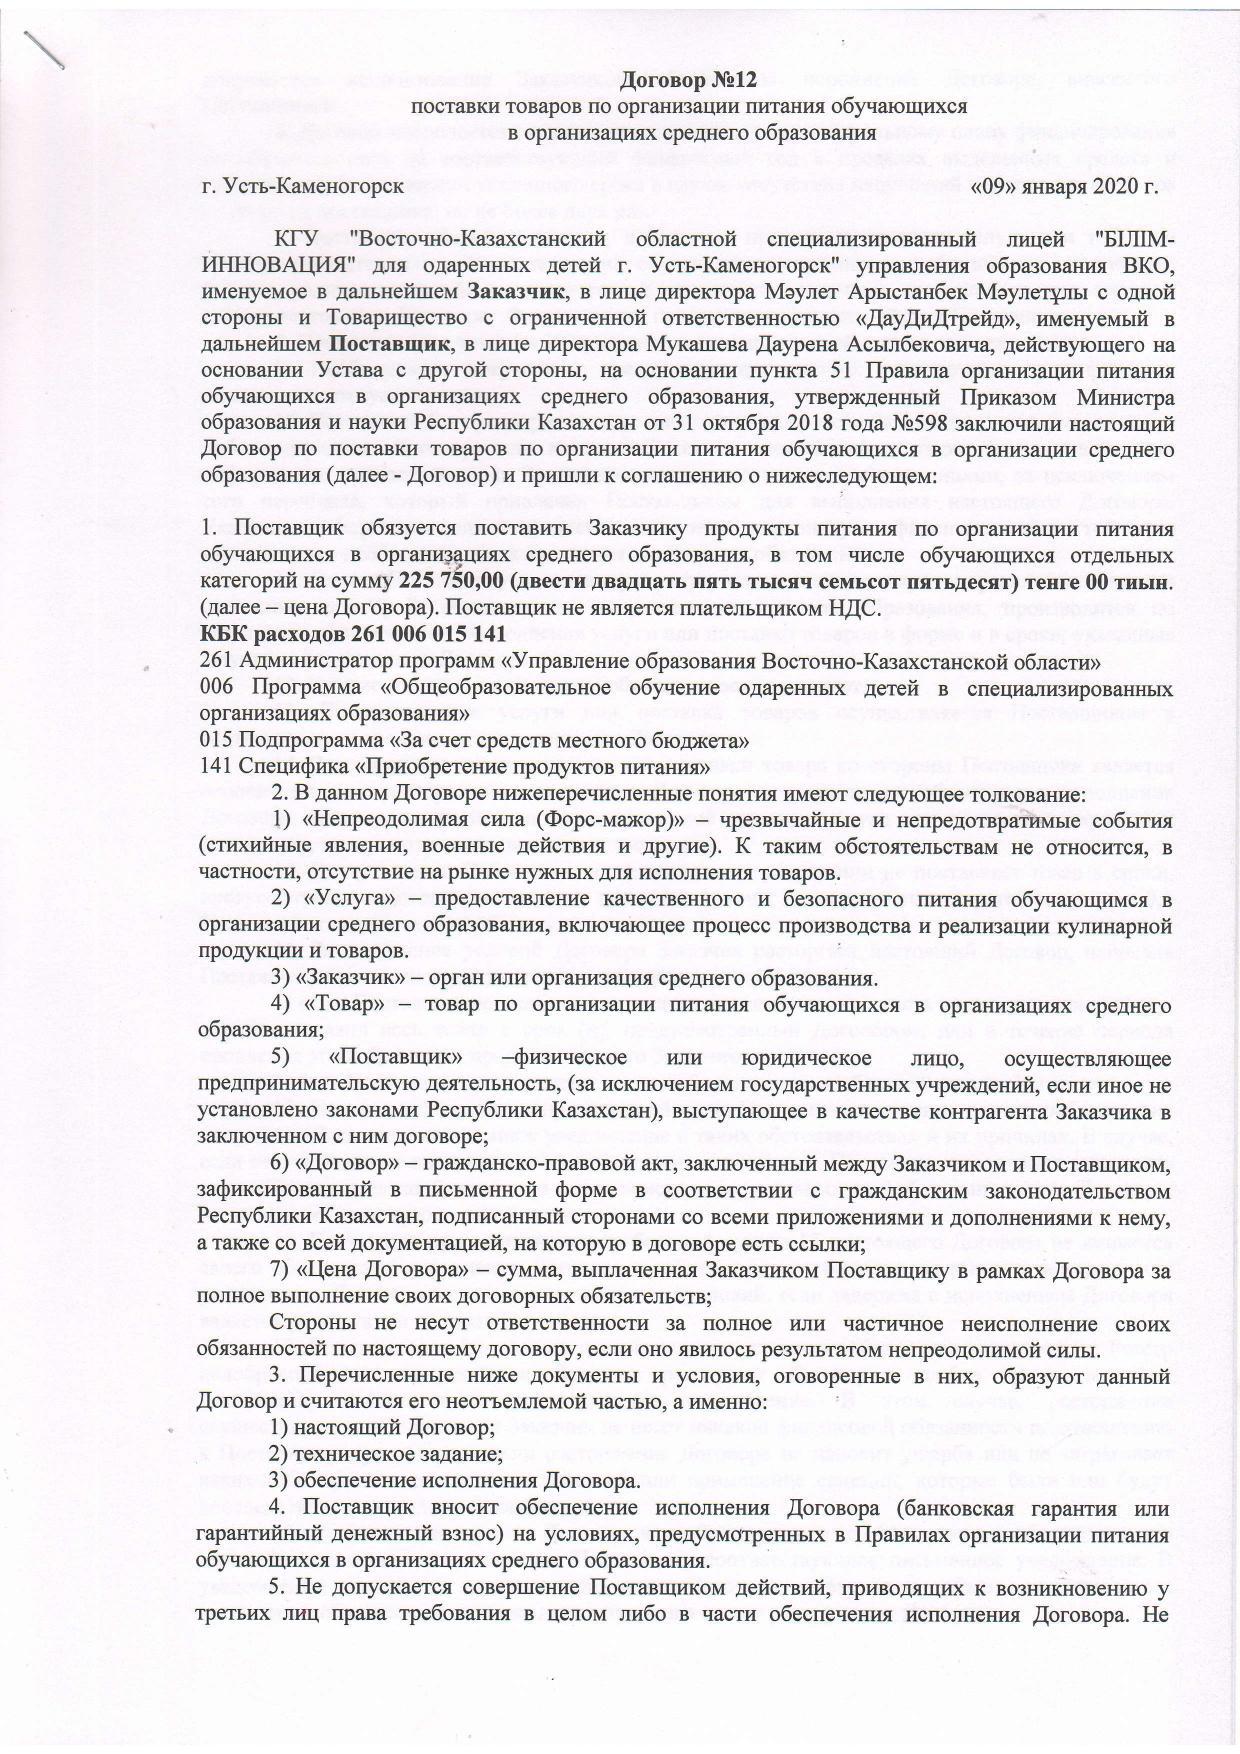 Договор 2020 №12 ТОО "ДауДиДтрейд"  мясная продукция "Куры"